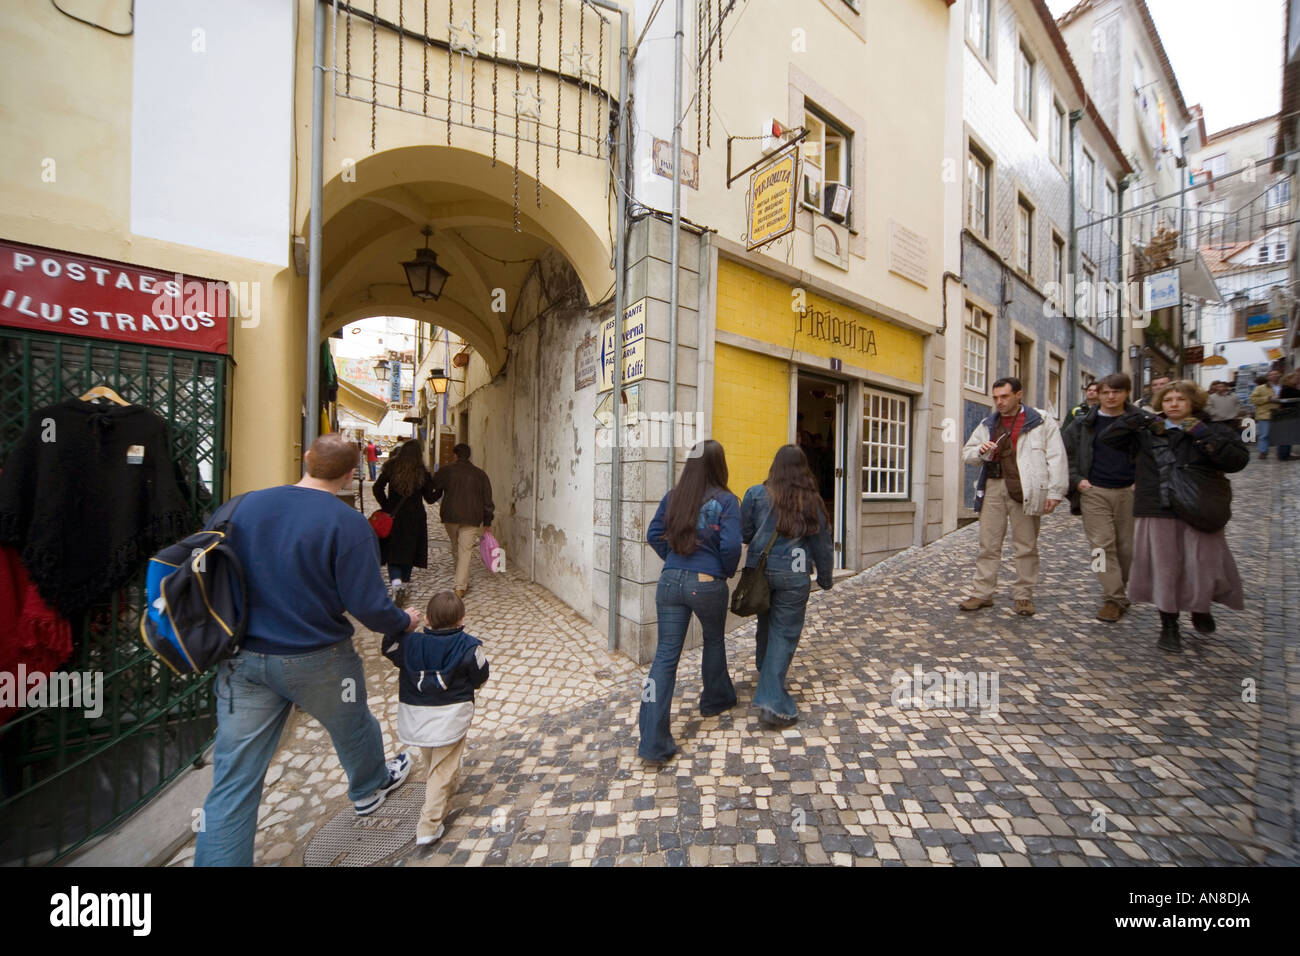 SINTRA Portogallo i turisti e gli amanti dello shopping passeggiata attraverso le strade di ciottoli e i vicoli di questa pittoresca cittadina collinare Foto Stock